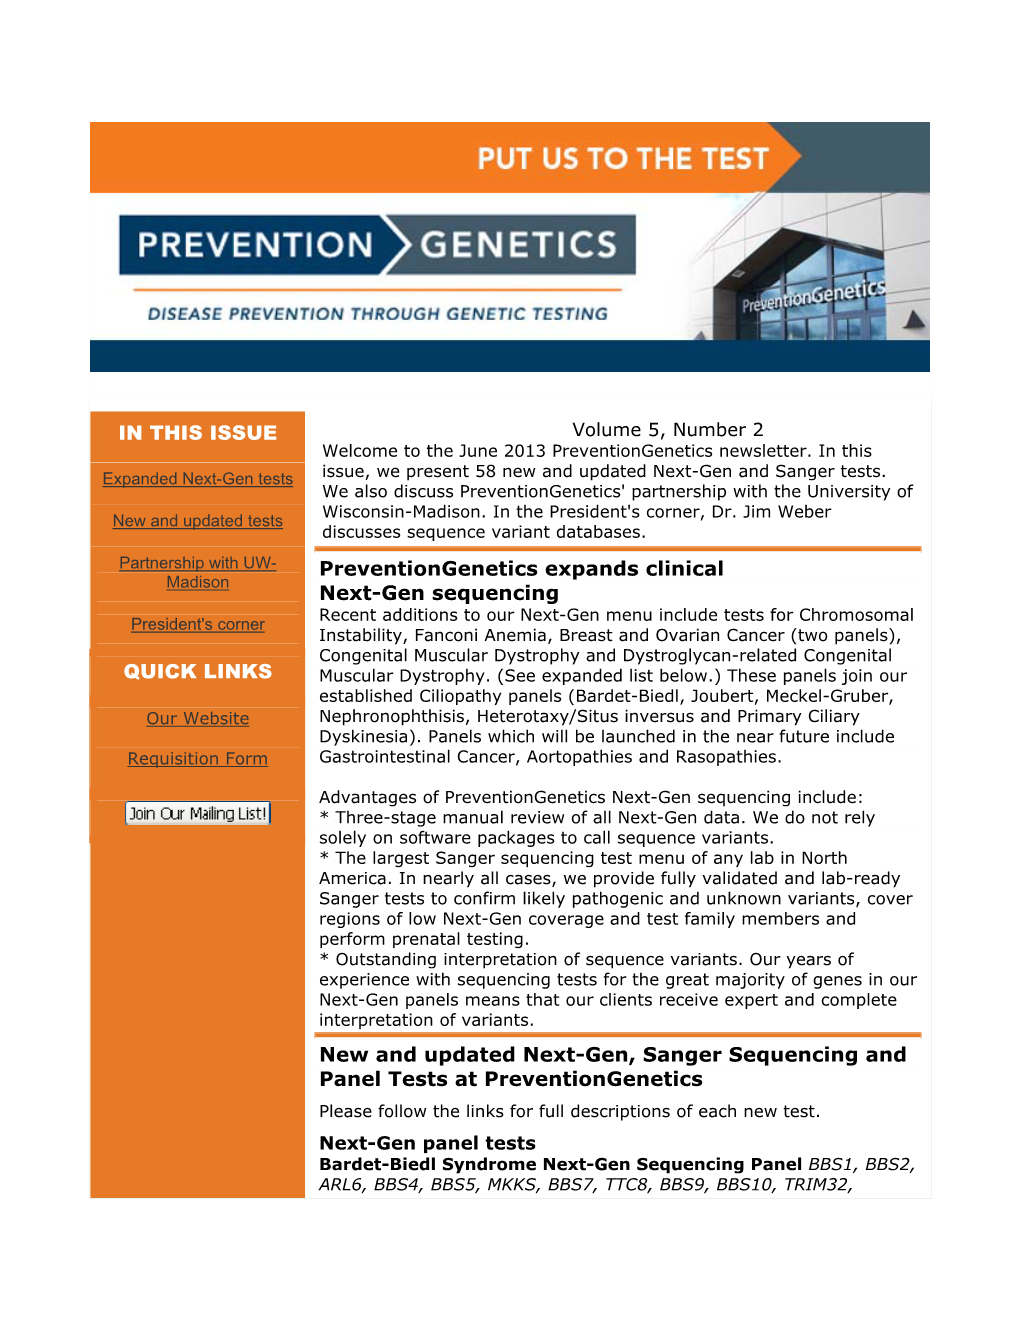 June 2013 Preventiongenetics Newsletter